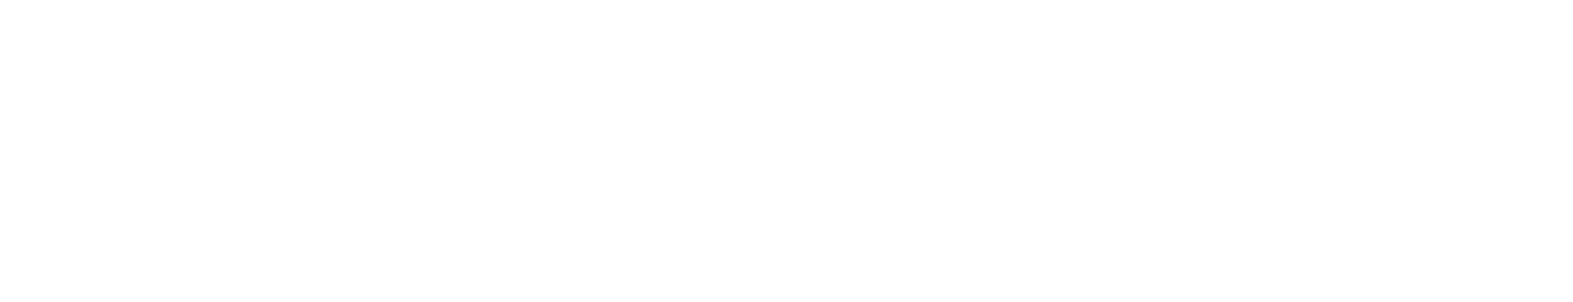 Fannie Mae
 logo grand pour les fonds sombres (PNG transparent)